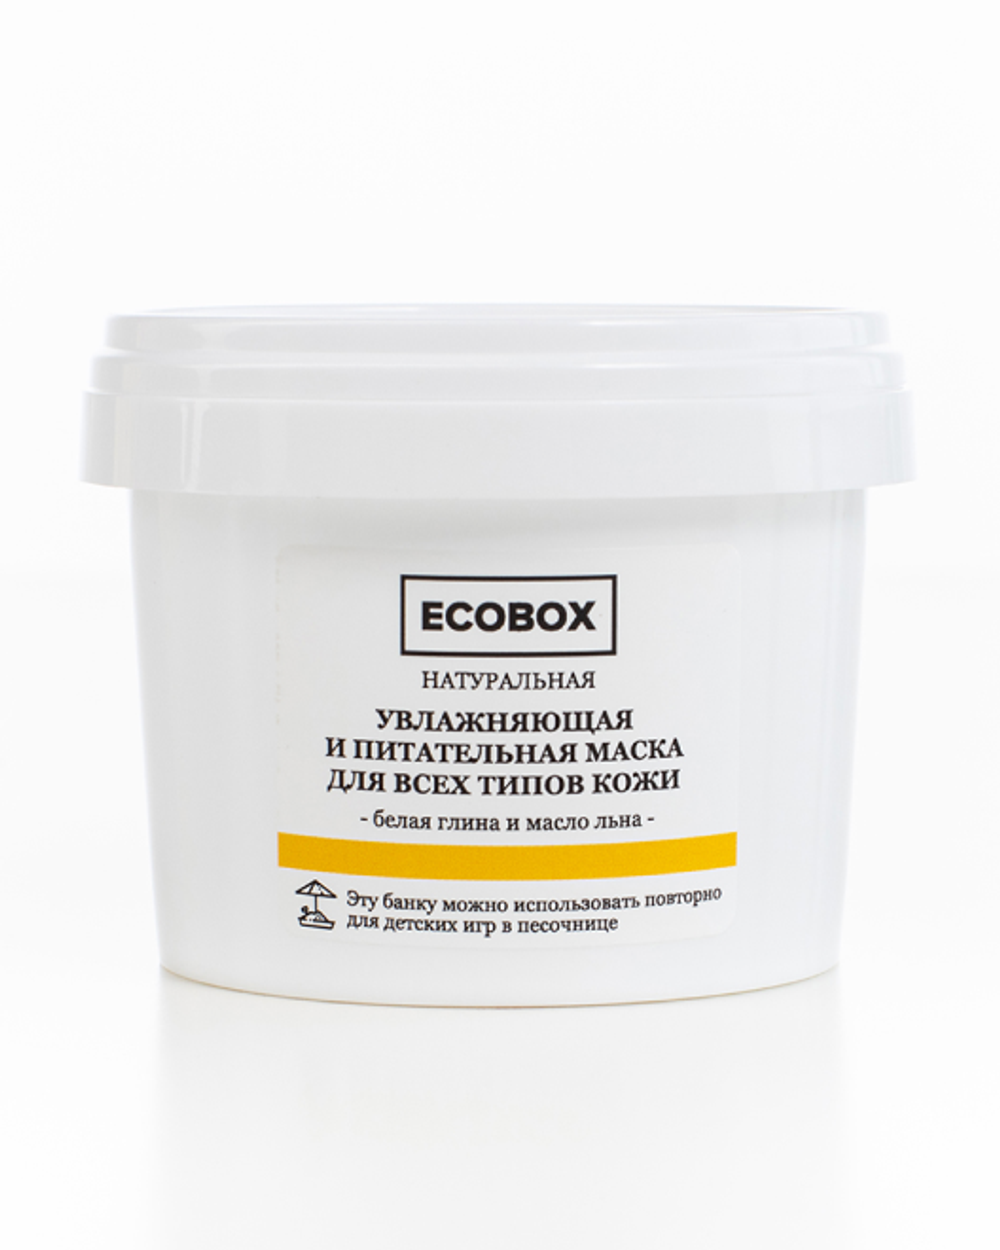 Натуральная увлажняющая и питательная маска для всех типов кожи лица "Белая глина и масло льна" 120 мл Ecobox